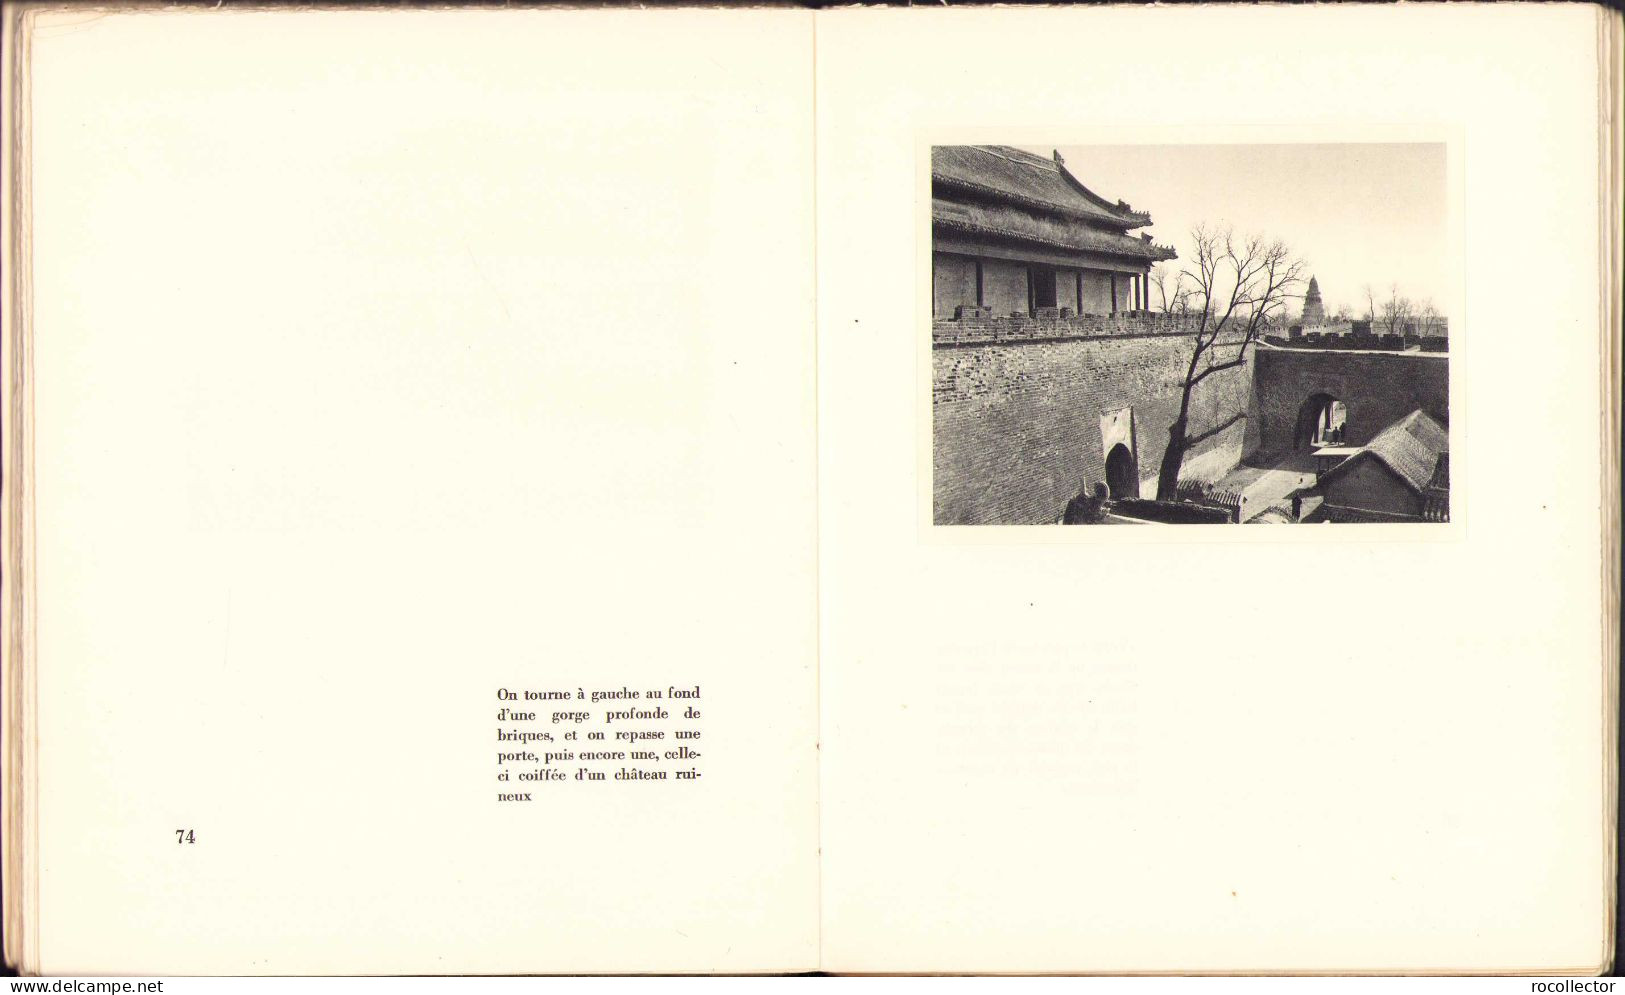 Image la de la Chine par Eric de Montmollin, 1942 C916